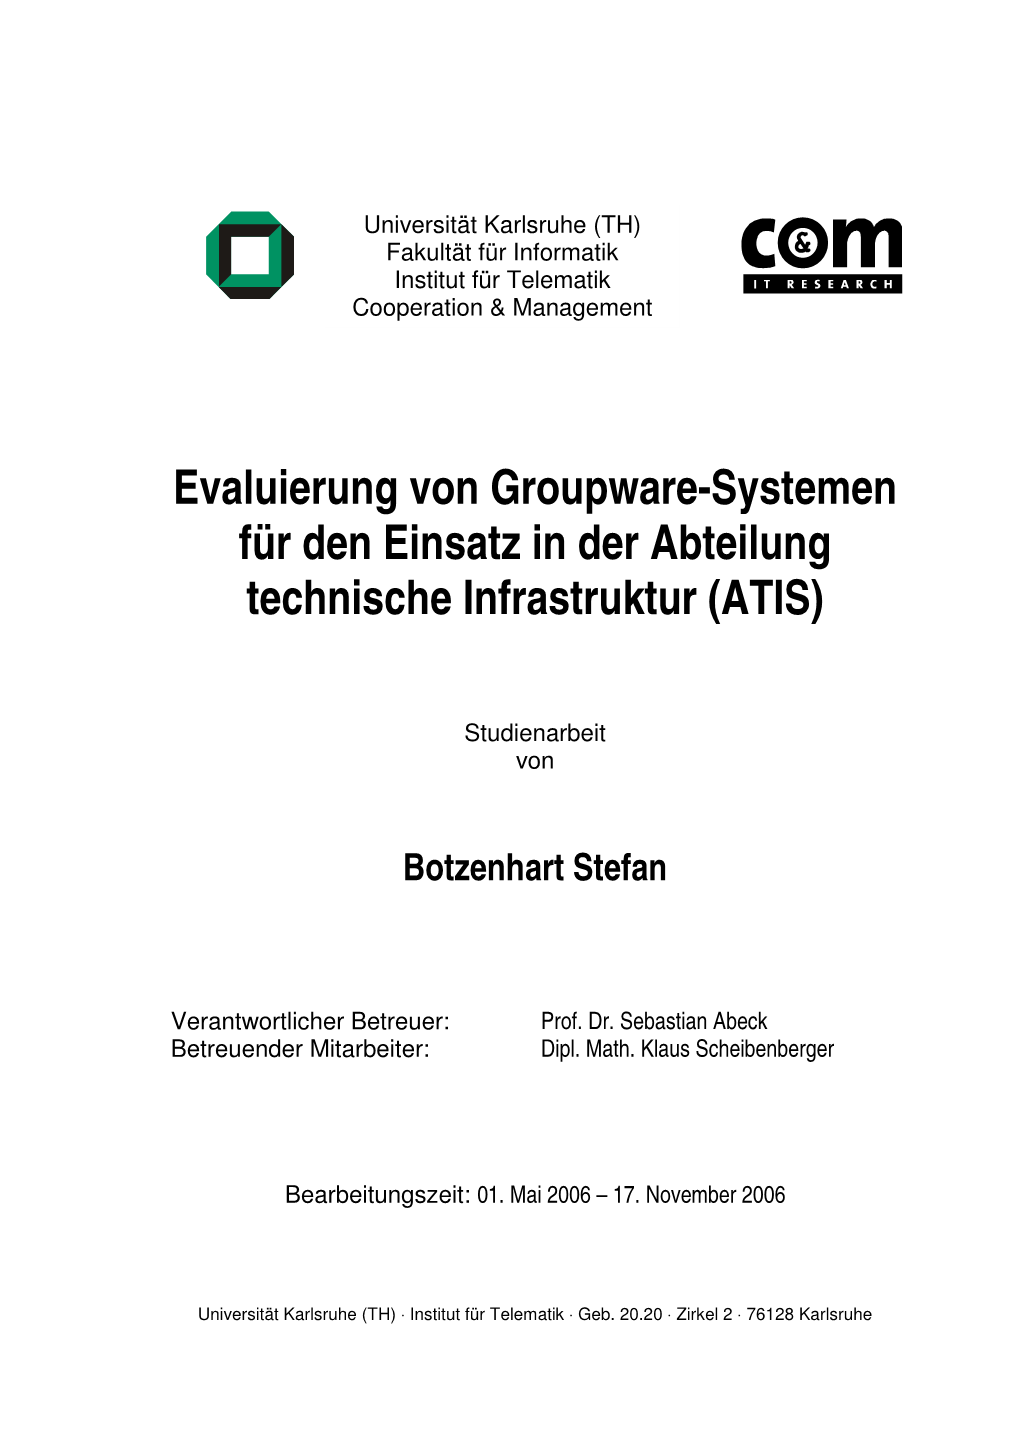 Evaluierung Von Groupware-Systemen Für Den Einsatz in Der Abteilung Technische Infrastruktur (ATIS)